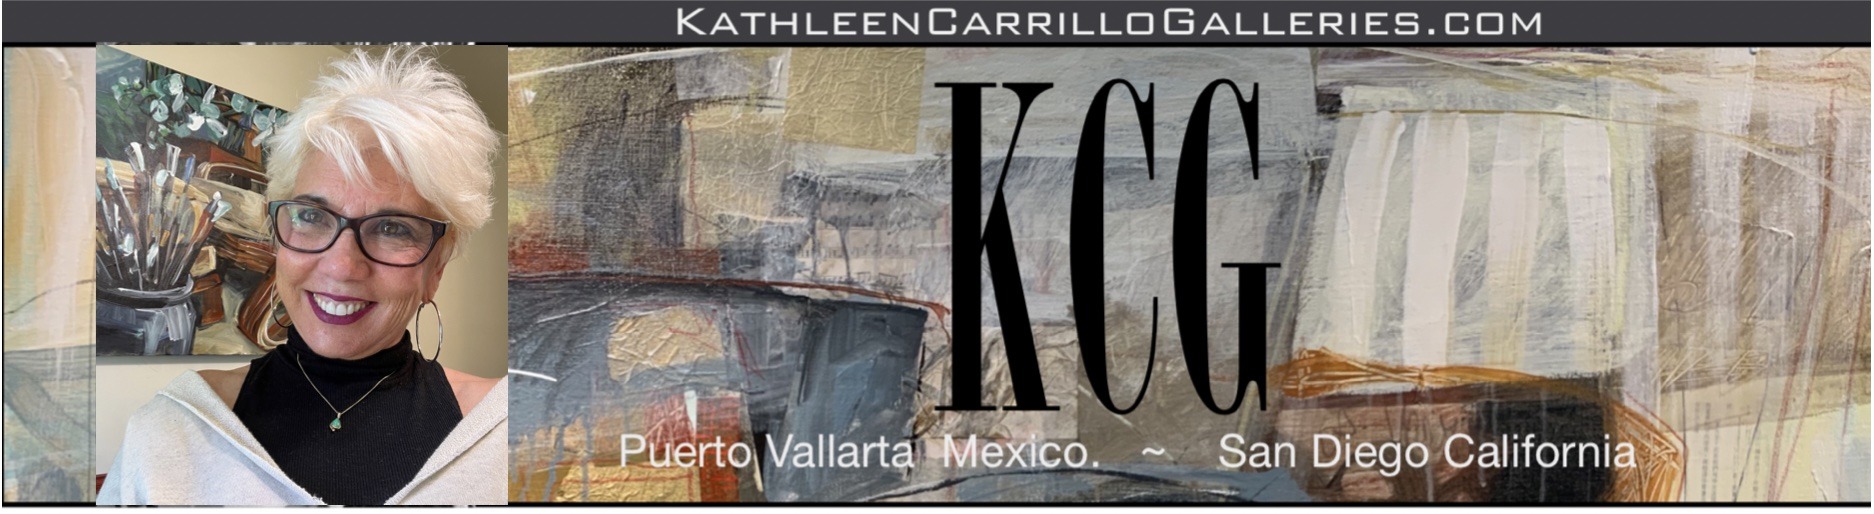 Kathleen Carrillo Galleries